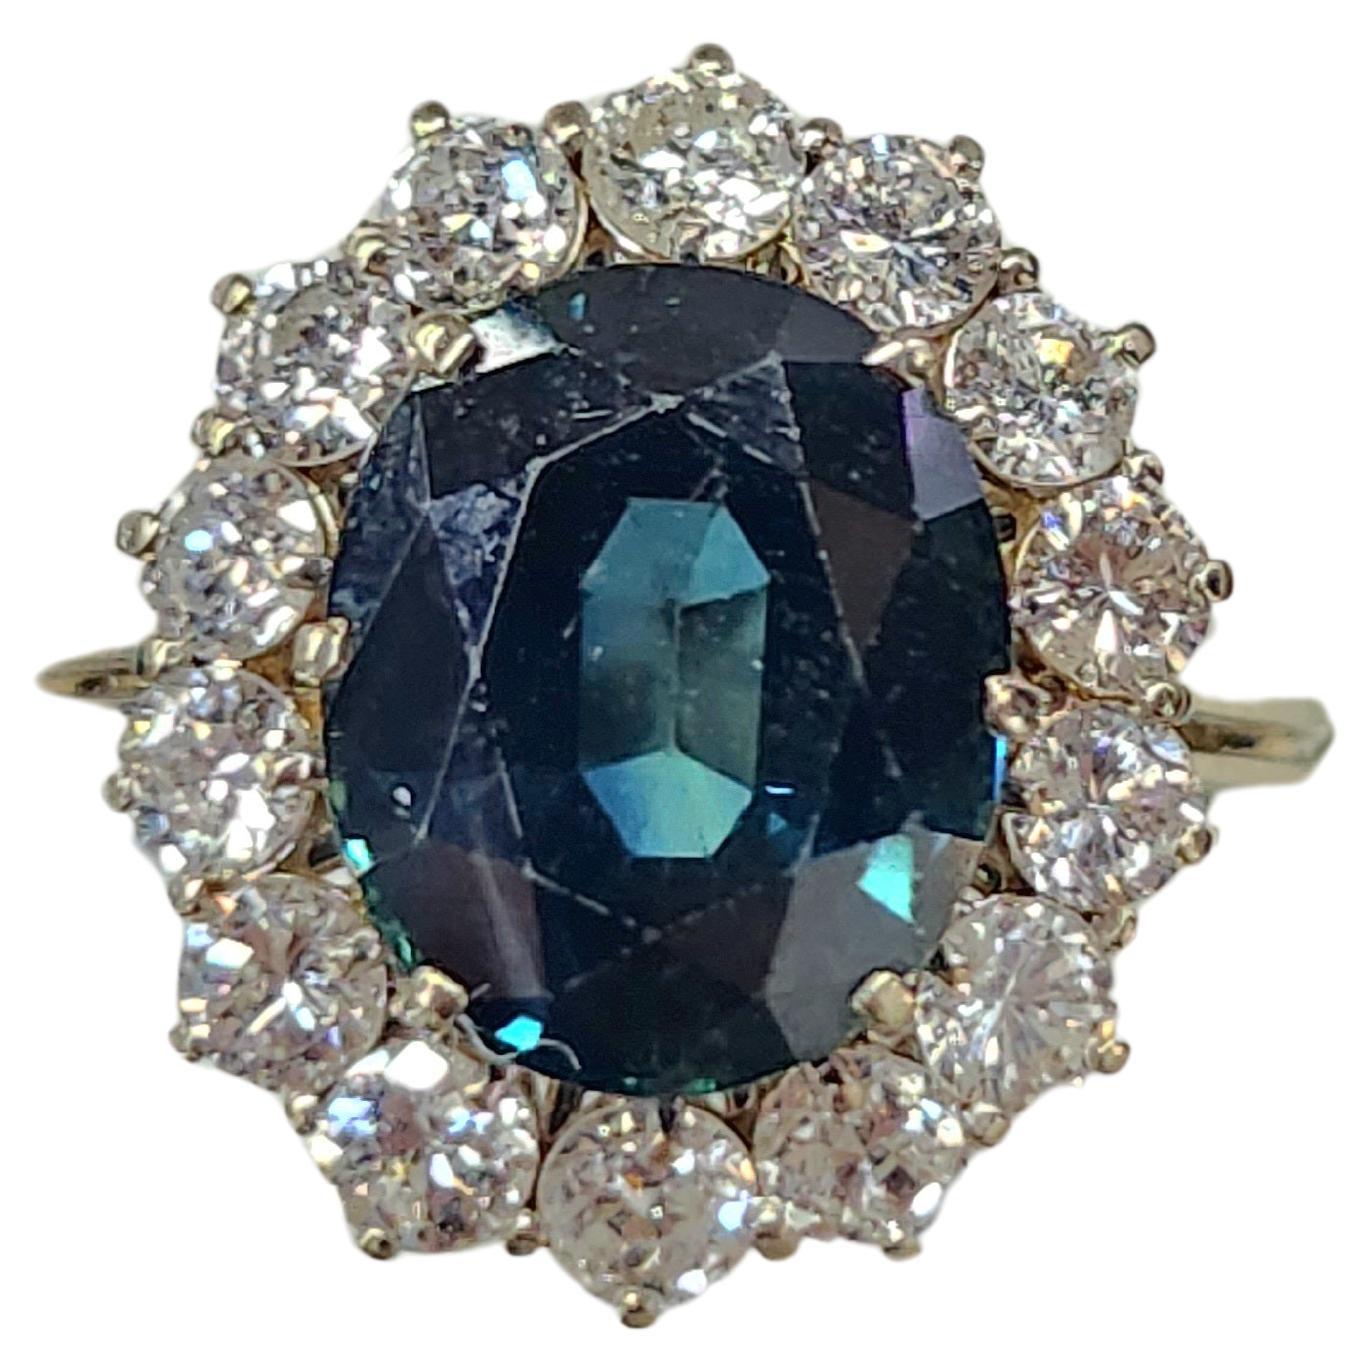 Vintage 18k Gold Ring mit natürlichen ovalen grünlich blauen Saphir kristallisierte Ozean Farbe mit einem geschätzten Gewicht von 5 bis 6 Karat Durchmesser 10mm×9mm flankiert mit alten europäischen Diamanten mit einem geschätzten Gewicht 1,2 Karat H